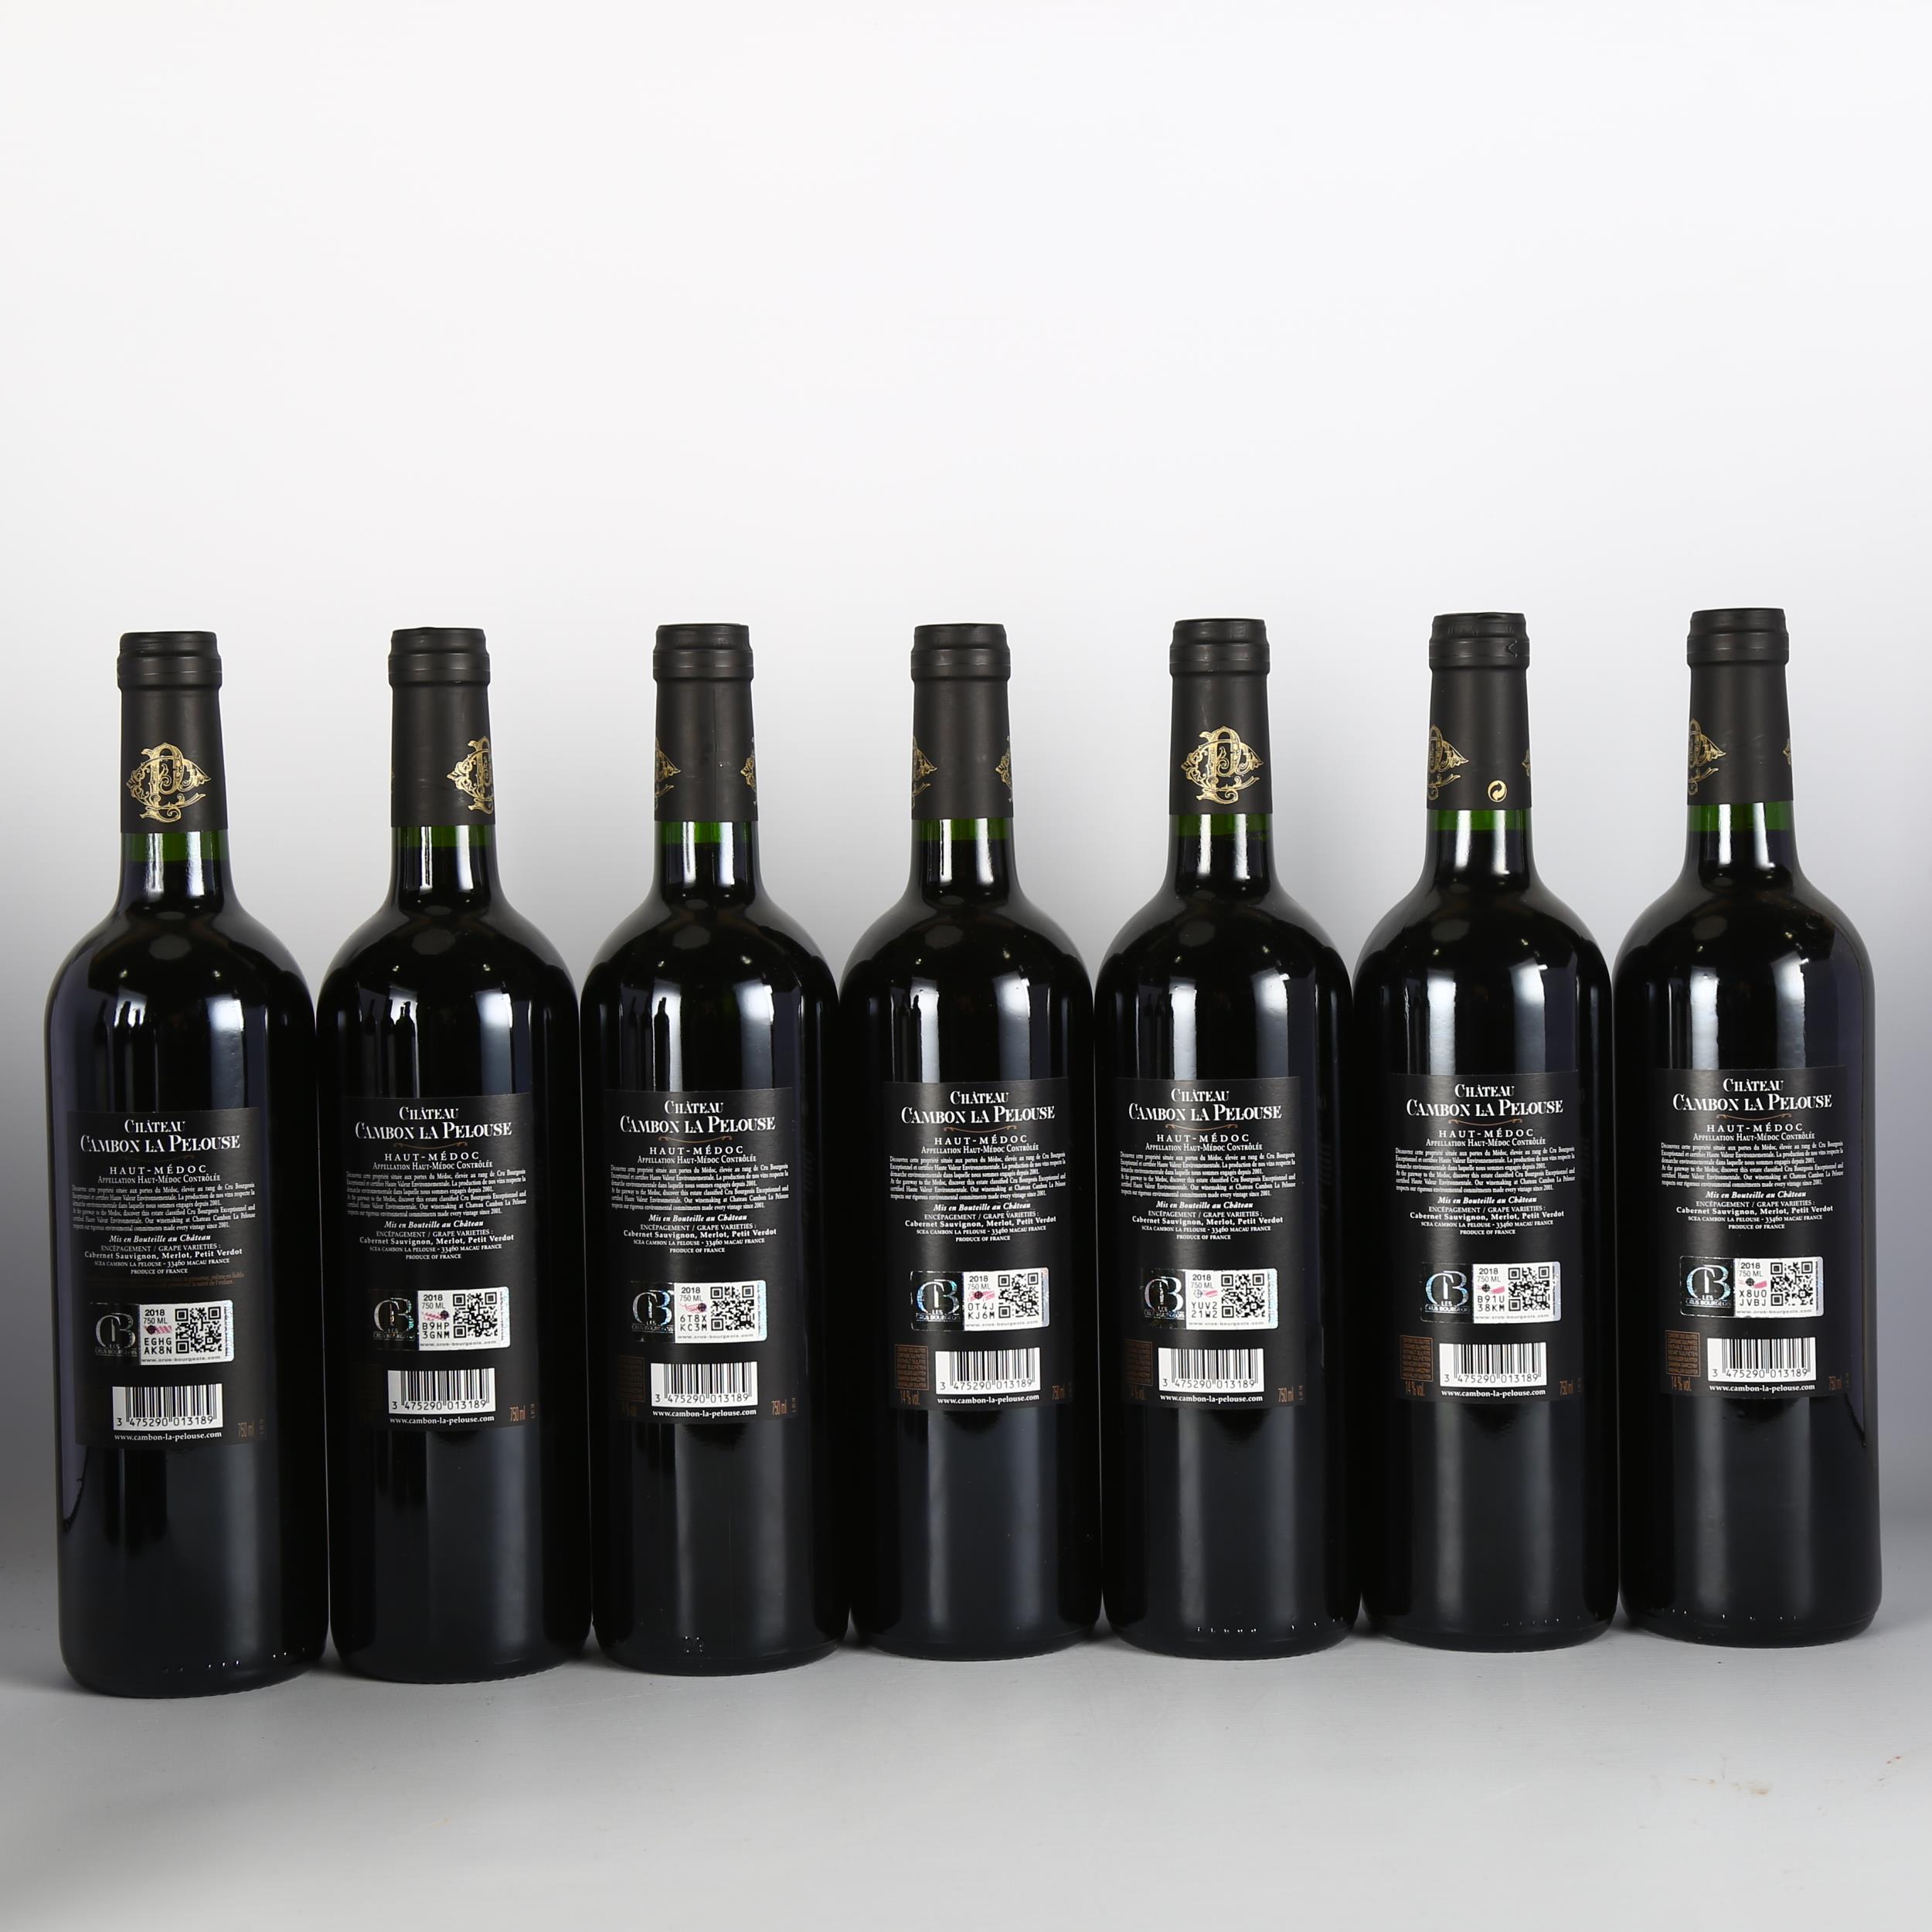 Chateau Cambon La Pelouse 2018, Haut-Medoc x 12 bottles. 92 points Decanter. Bordeaux red wine. - Image 3 of 3